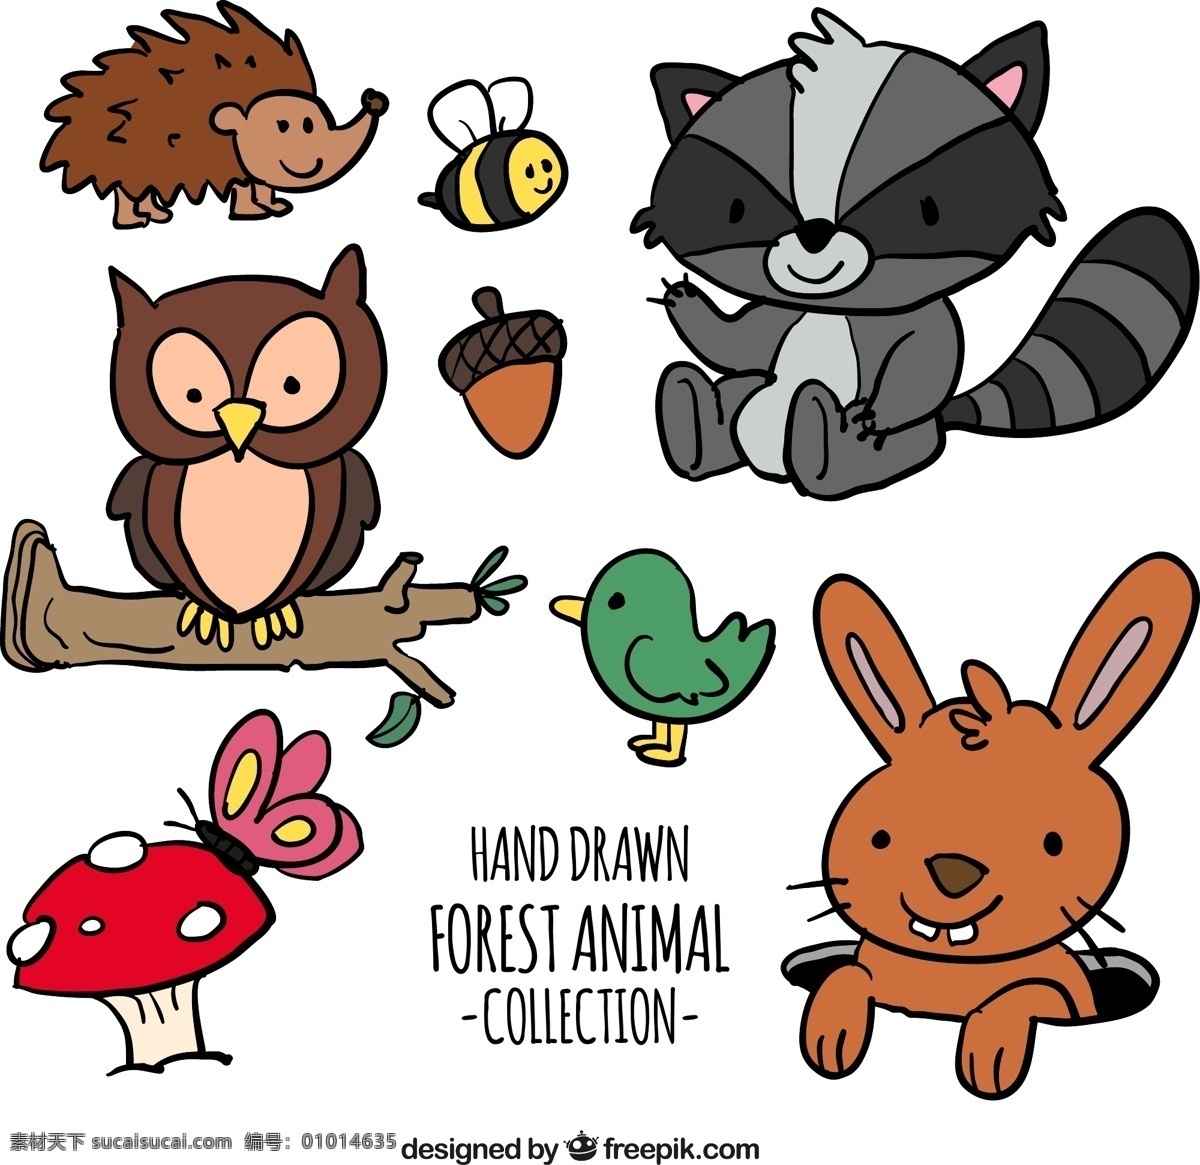 款 彩绘 森林 动物 矢量 卡通 手绘 刺猬 兔子 小鸟 可爱